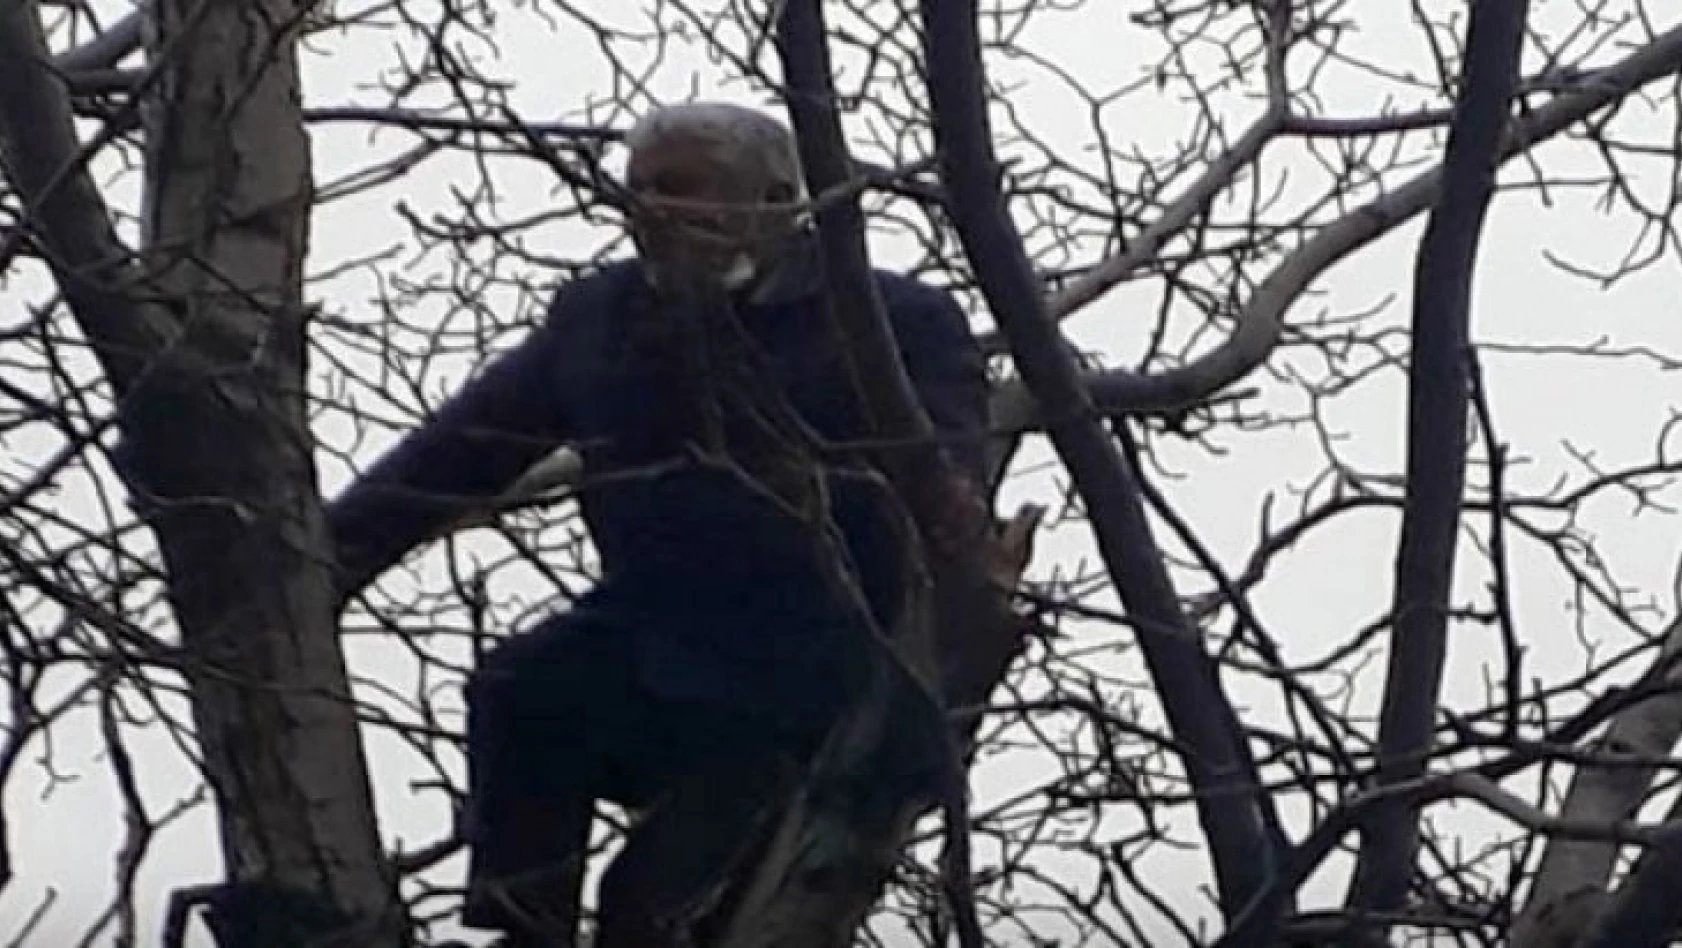 60 bin lira para cezası uygulanan şahıs intihar için ağaca çıktı